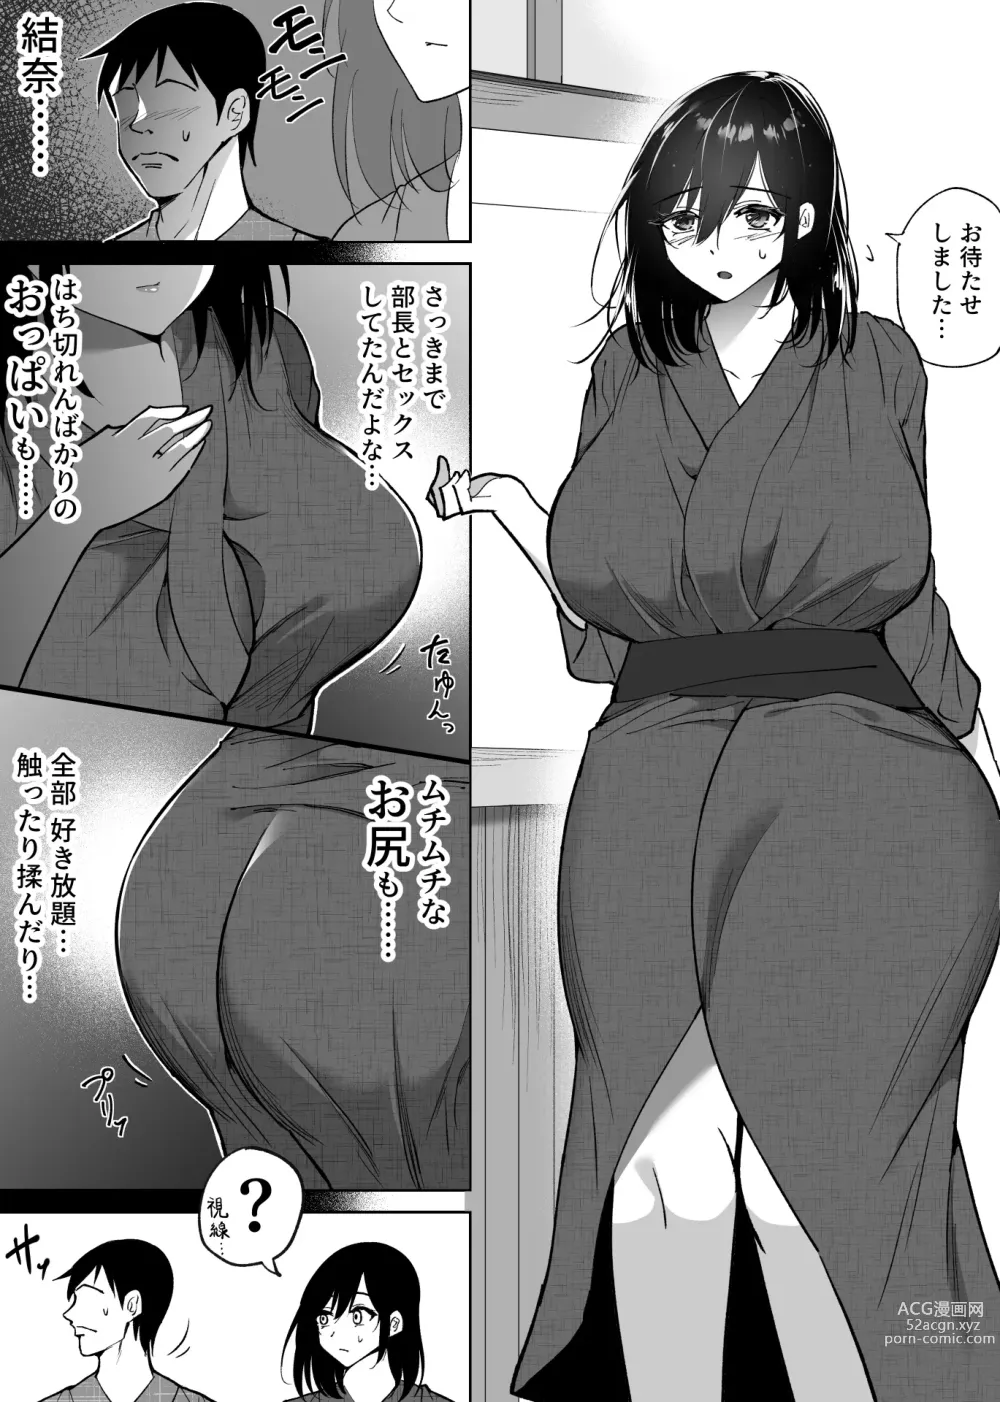 Page 5 of doujinshi Ochiru toki 3 -Ryokan no Kyakushitsu de Otto no Shuushin-Chuu Okonawareru Tanin Koubi-